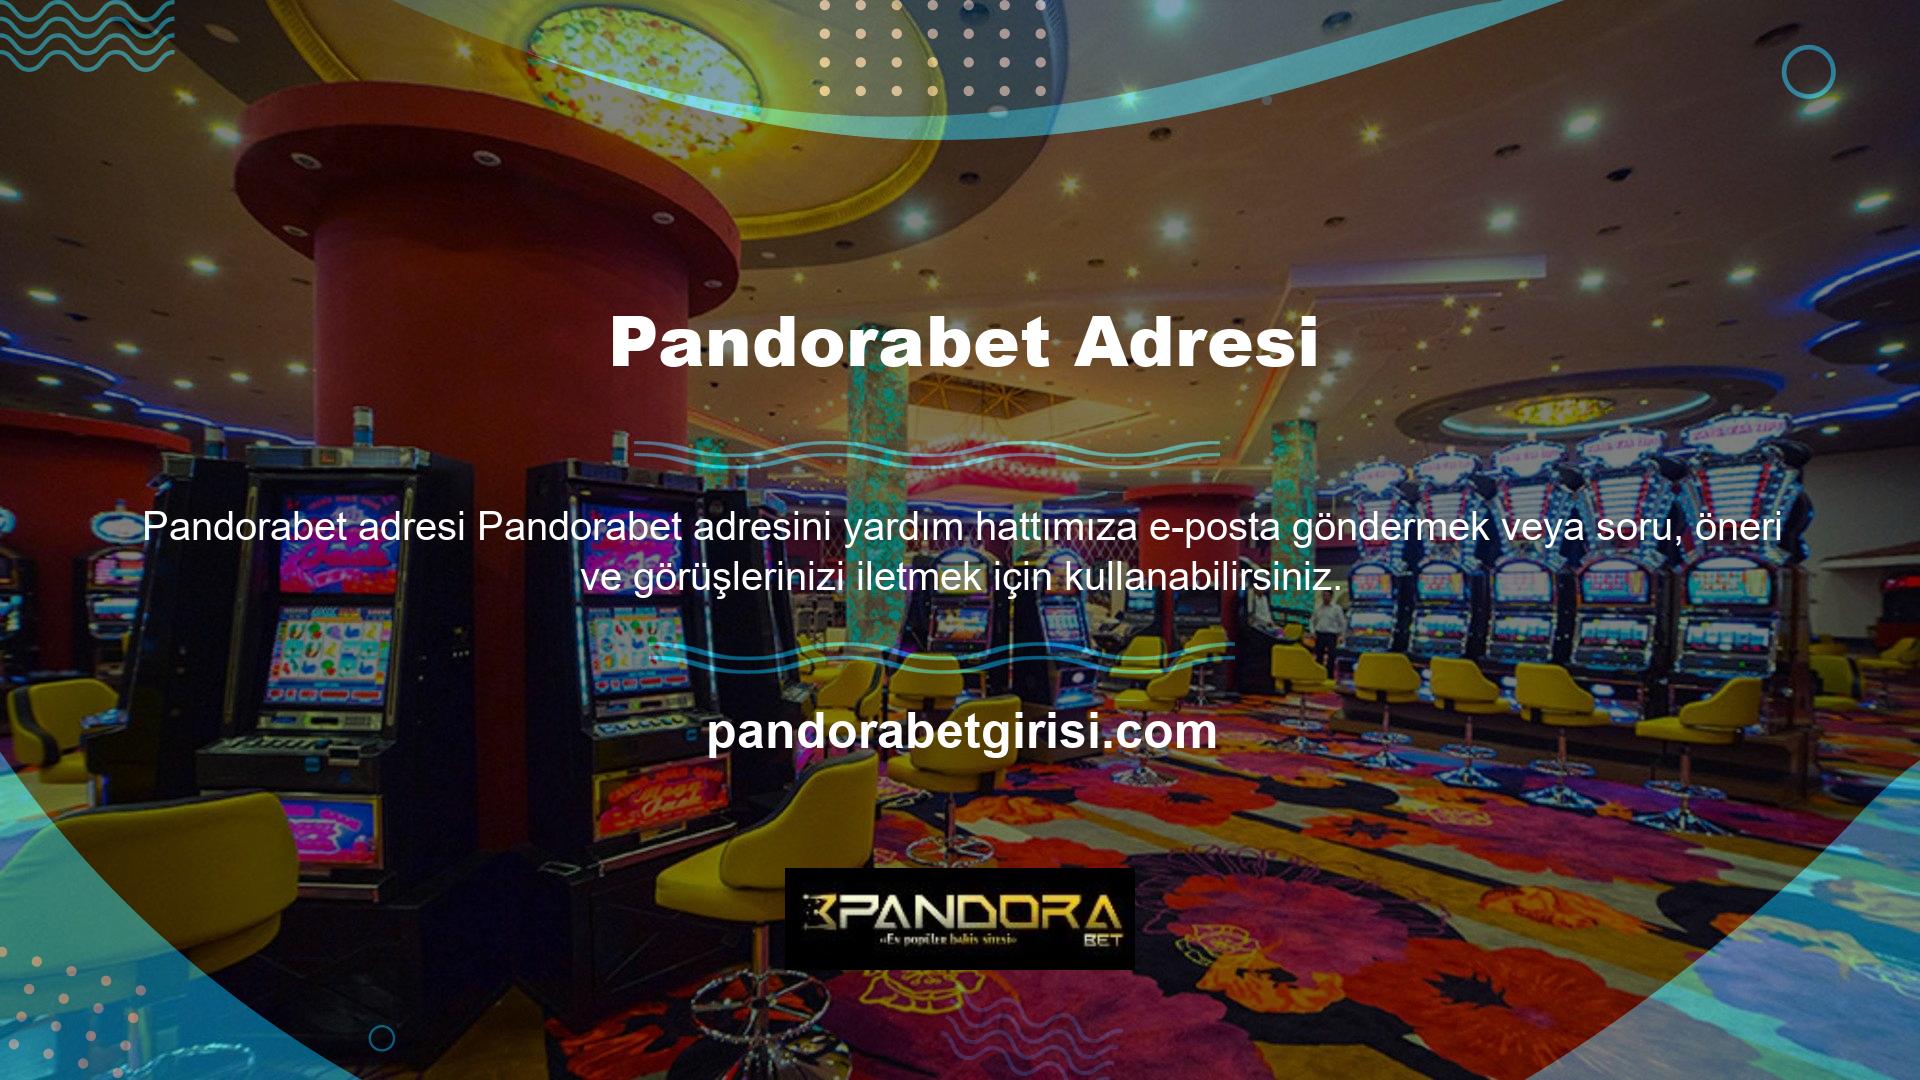 Pandorabet web sitesine reklam vermek veya reklamlarla ilgili herhangi bir soru veya yorumunuzu paylaşmak isterseniz @Pandorabet